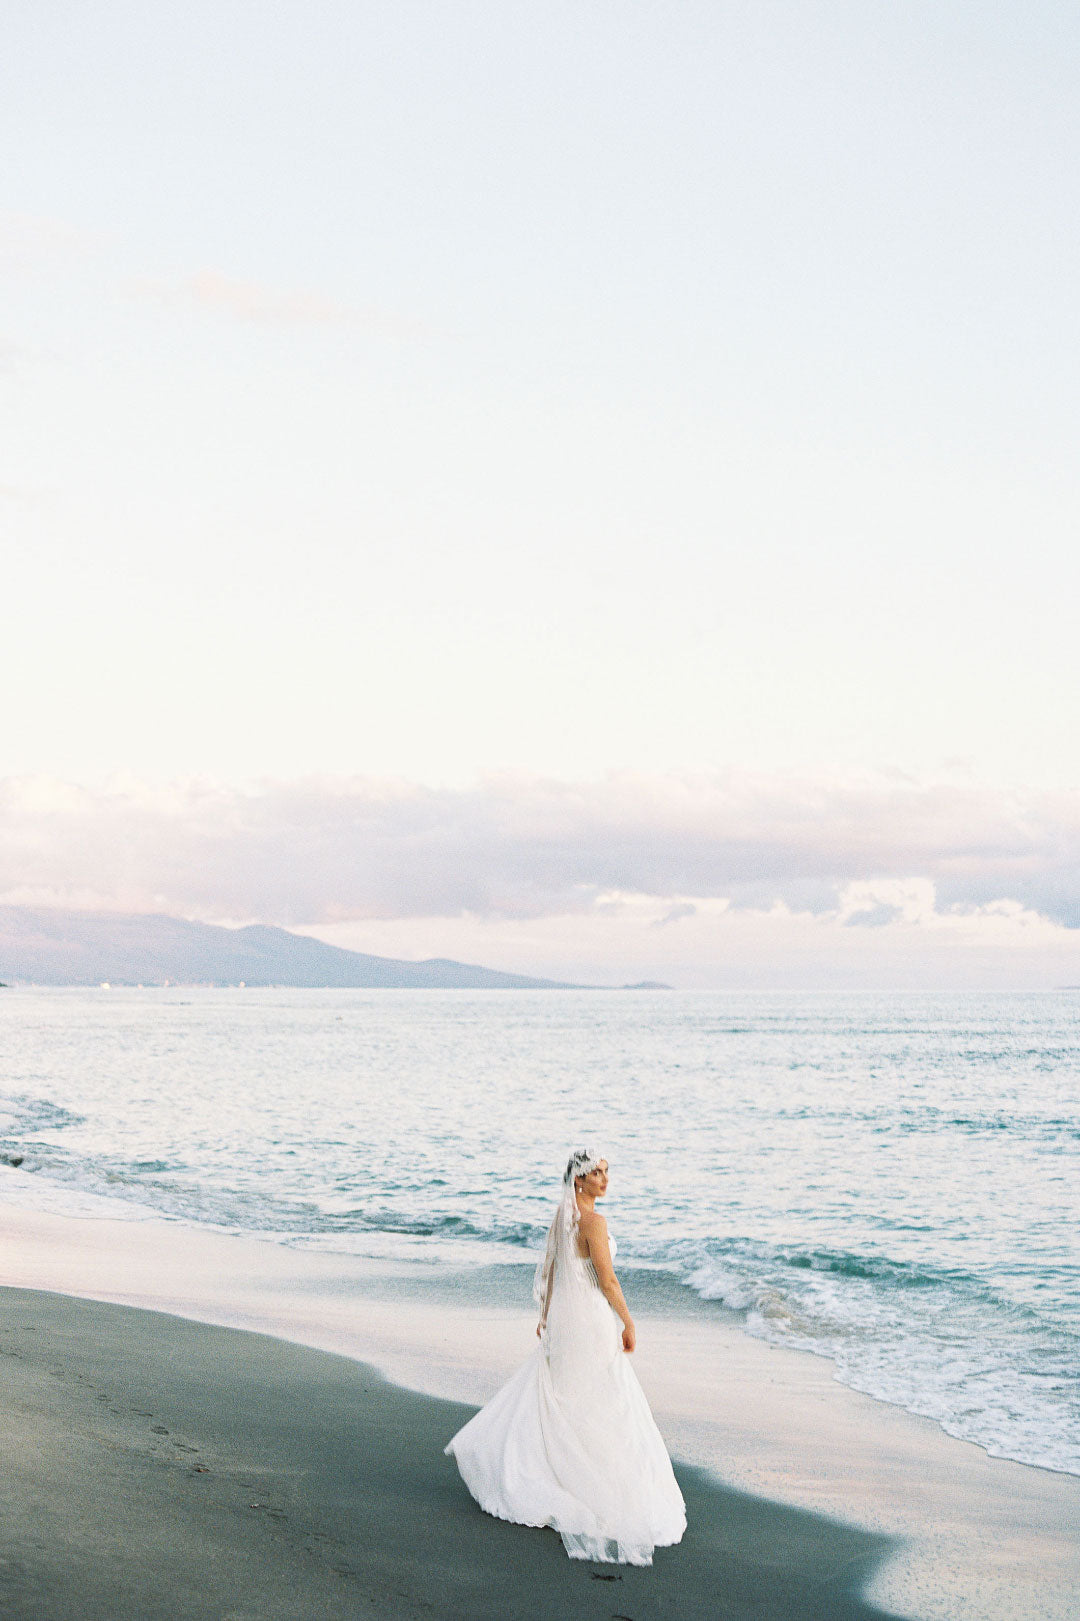 Bride on Beach in Arabella by Claire Pettibone 